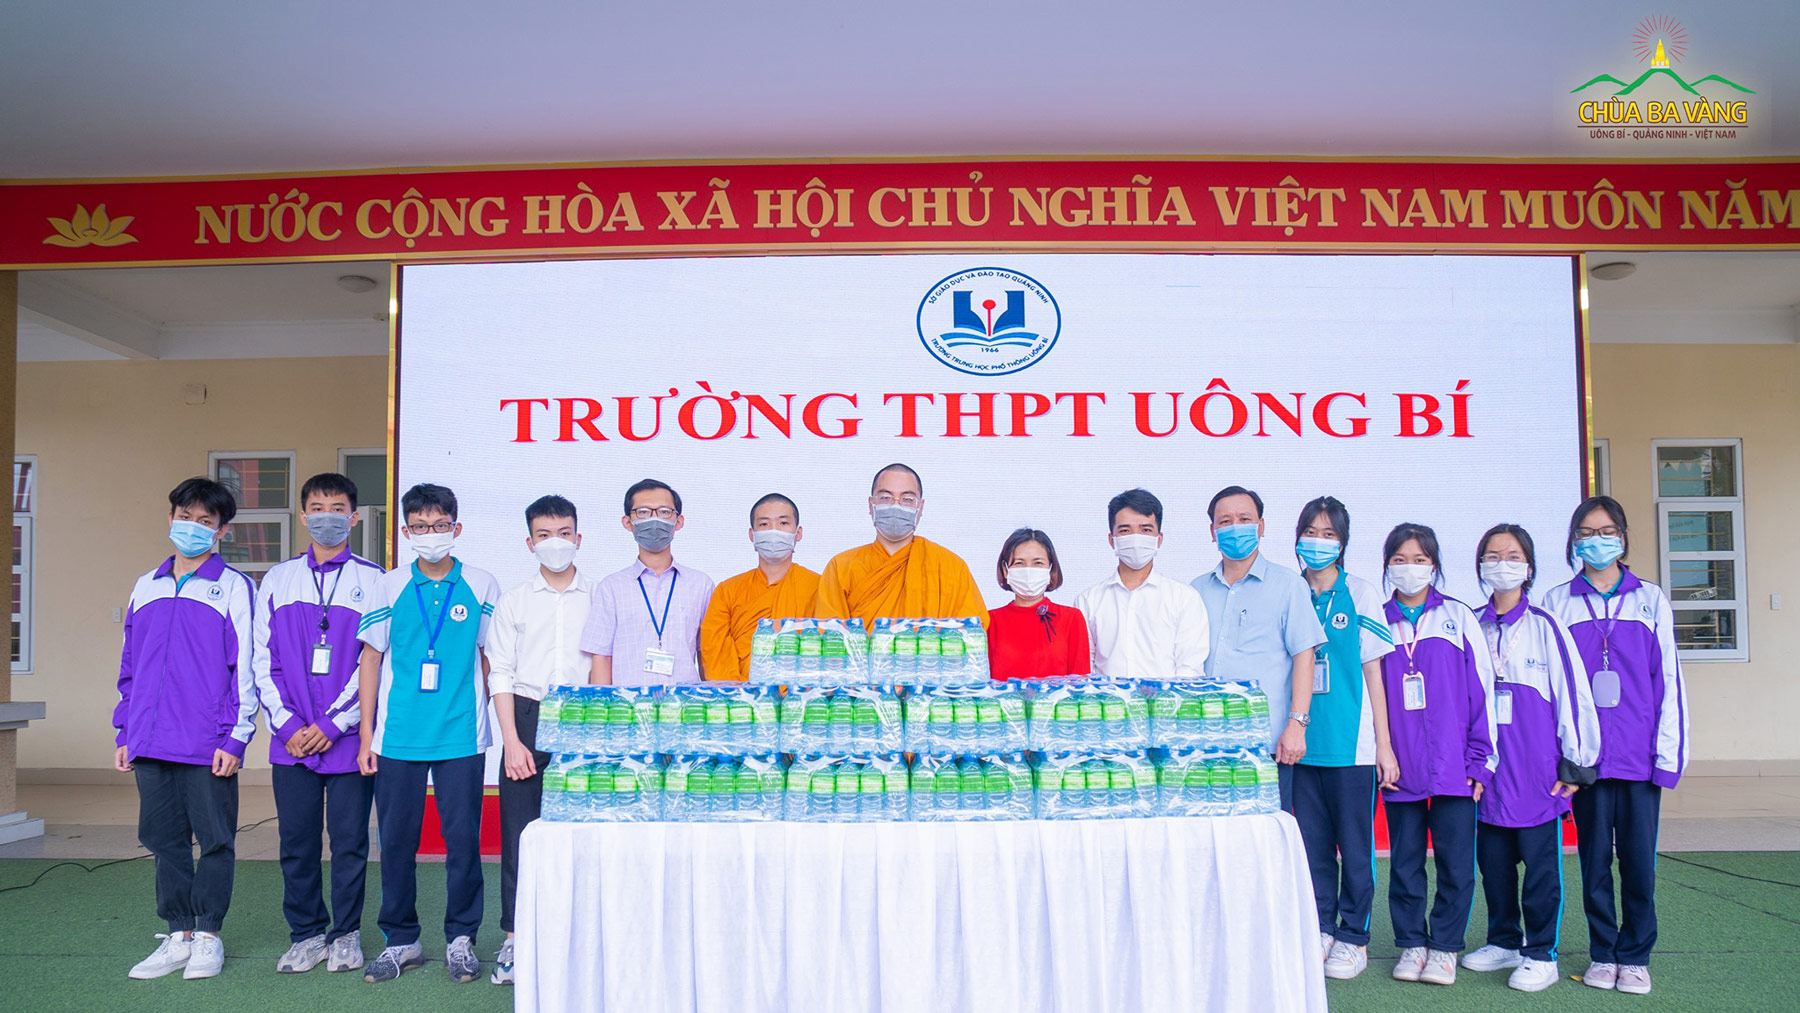 Chư Tăng chùa Ba Vàng trao tặng nước tại điểm trường THPT Uông Bí